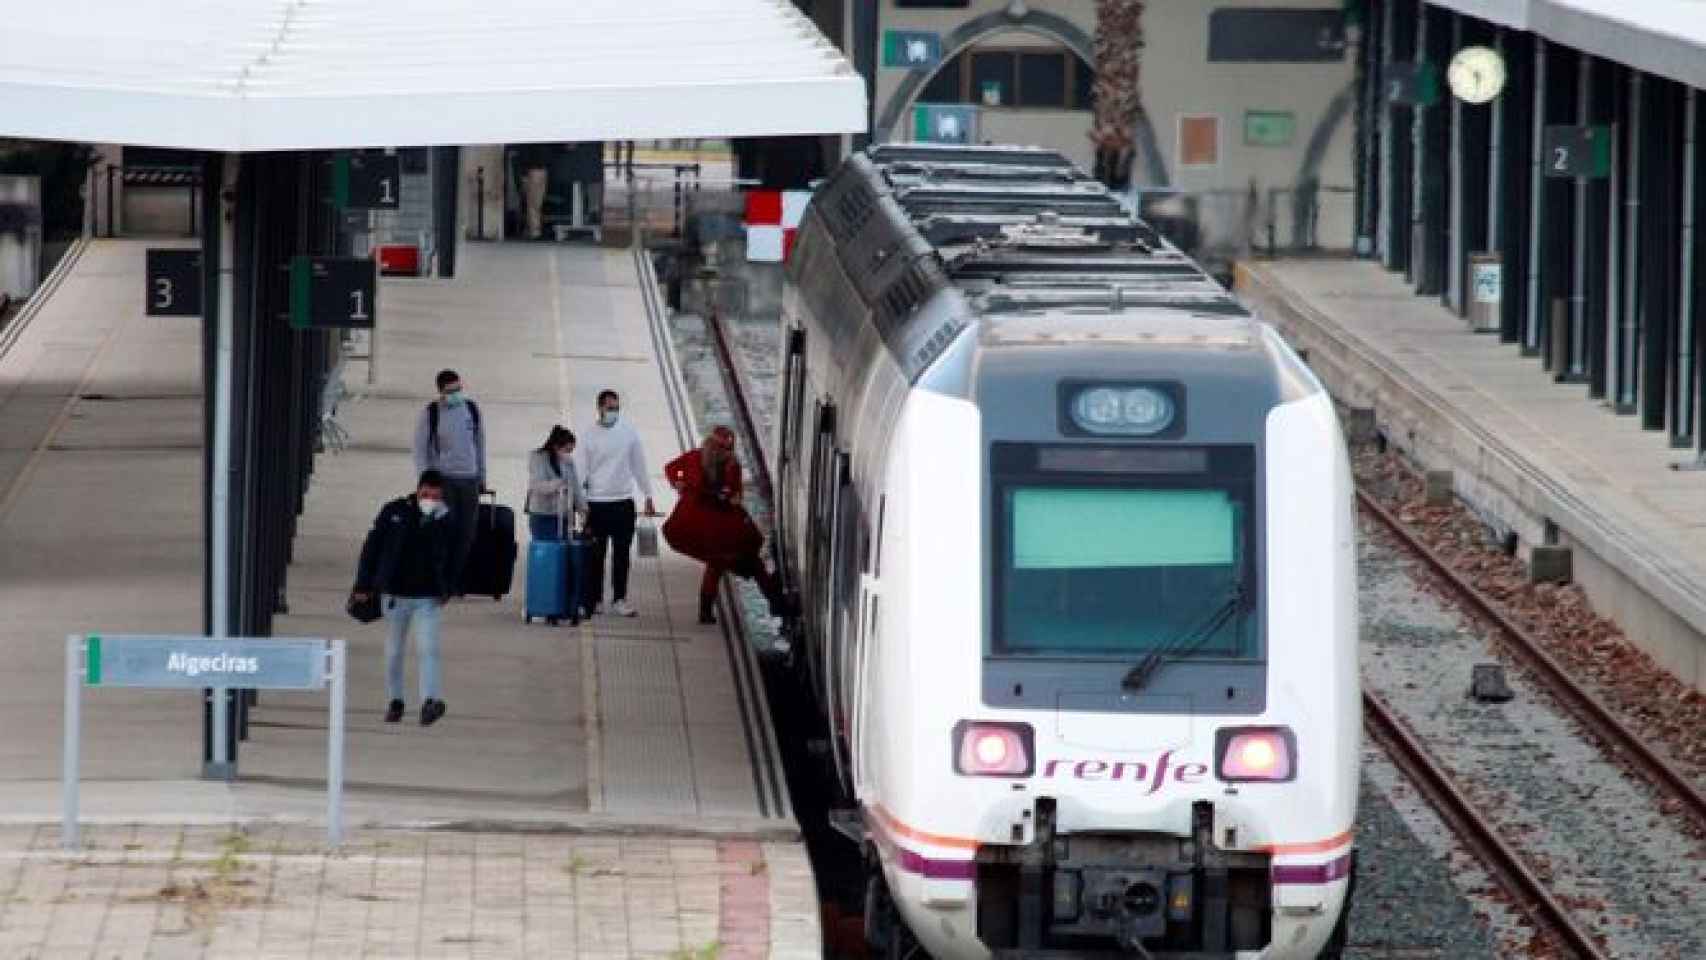 Pasajeros subiendo al tren en Algeciras.